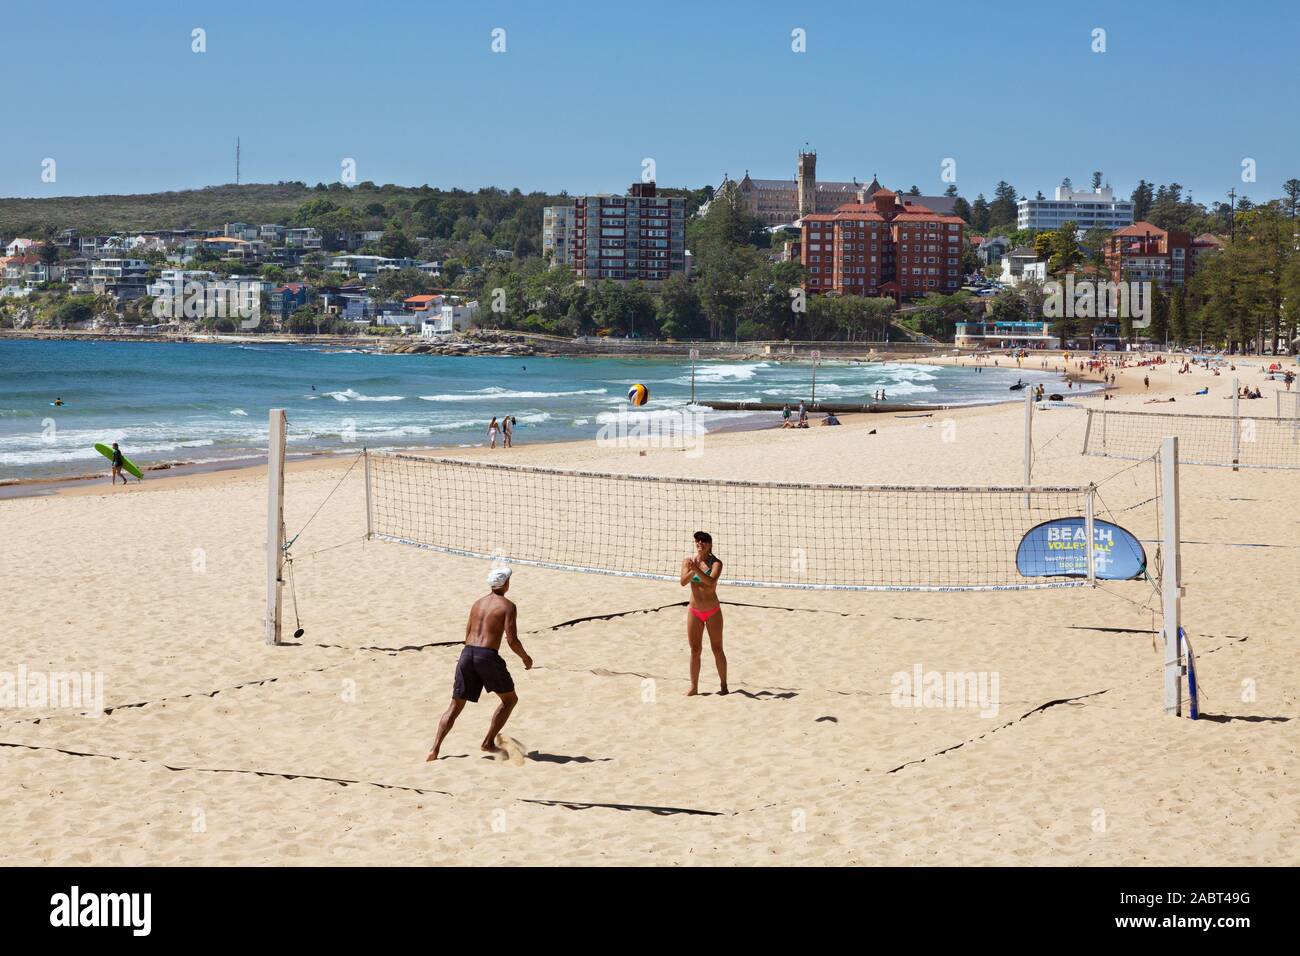 La plage de Bondi Beach, Sydney, Sydney ; les gens à jouer au volleyball de plage au soleil du printemps, exemple de vie australienne Bondi Beach, Sydney, Australie Banque D'Images